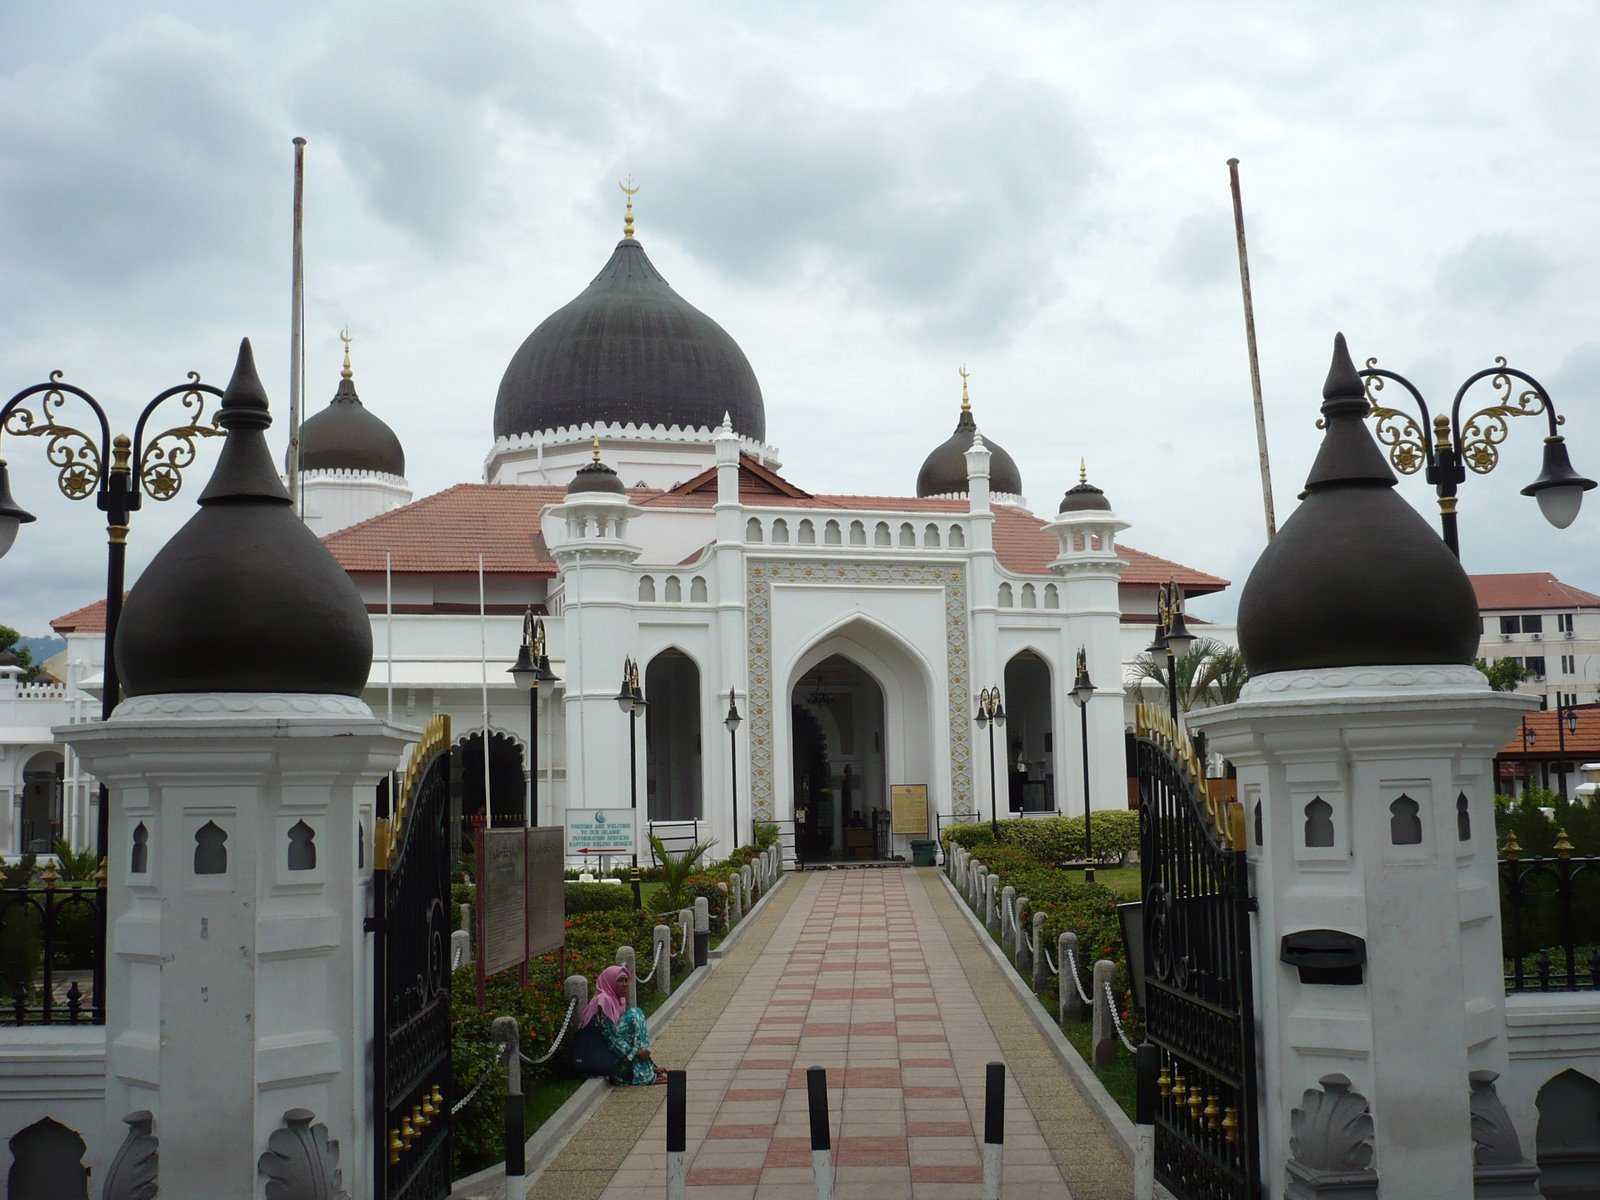 Masjid Kapitan Keling Pulau Pinang : Kapitan Keling Mosque in Penang